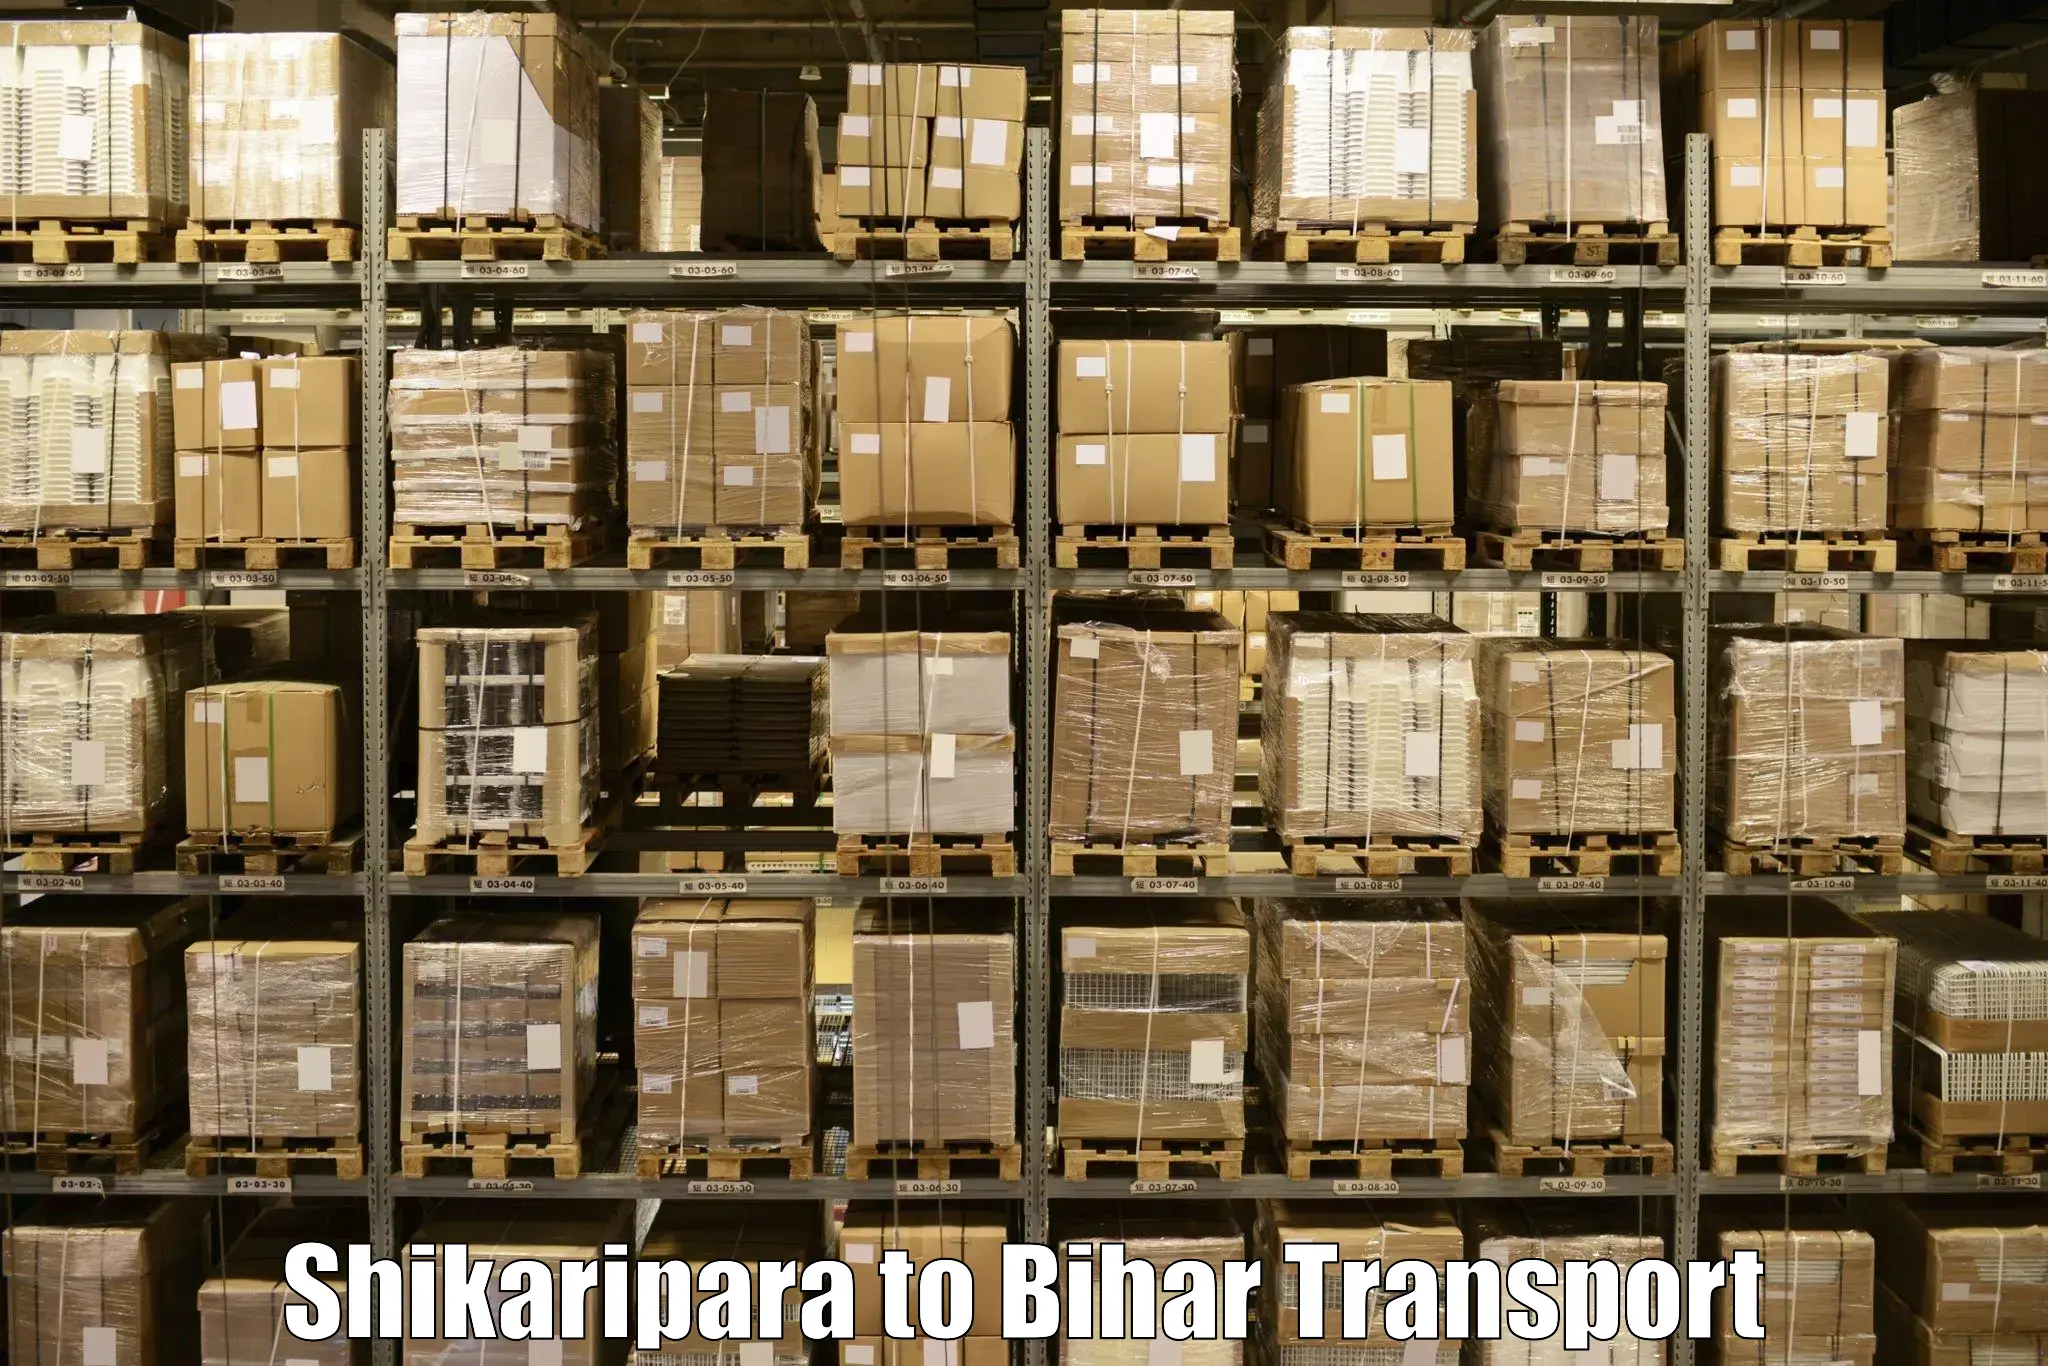 Furniture transport service Shikaripara to Bhojpur